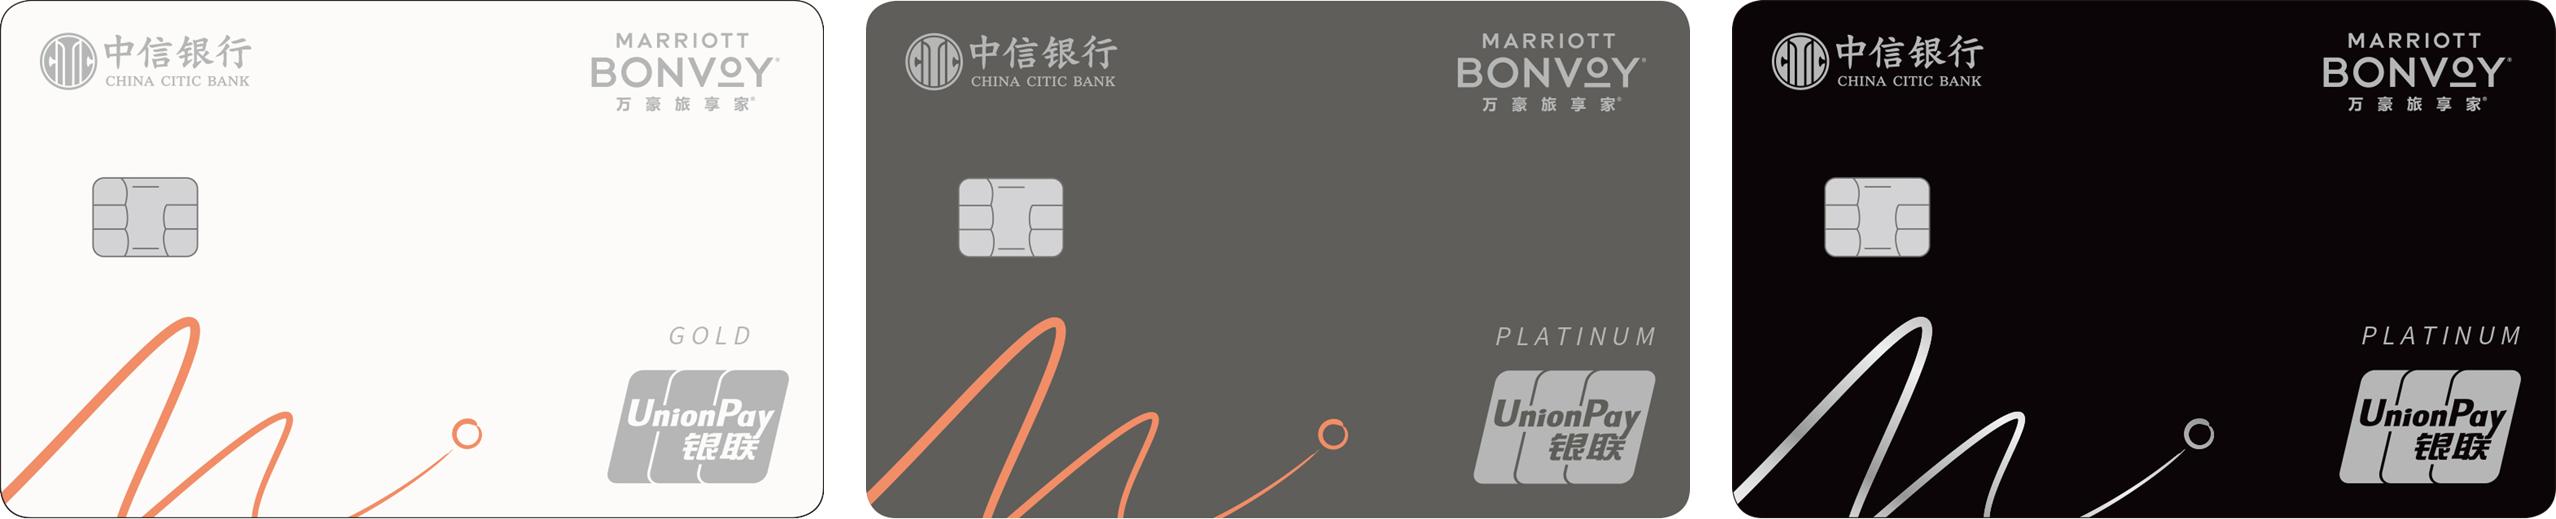 中信银行携手万豪旅享家国内首发联名信用卡